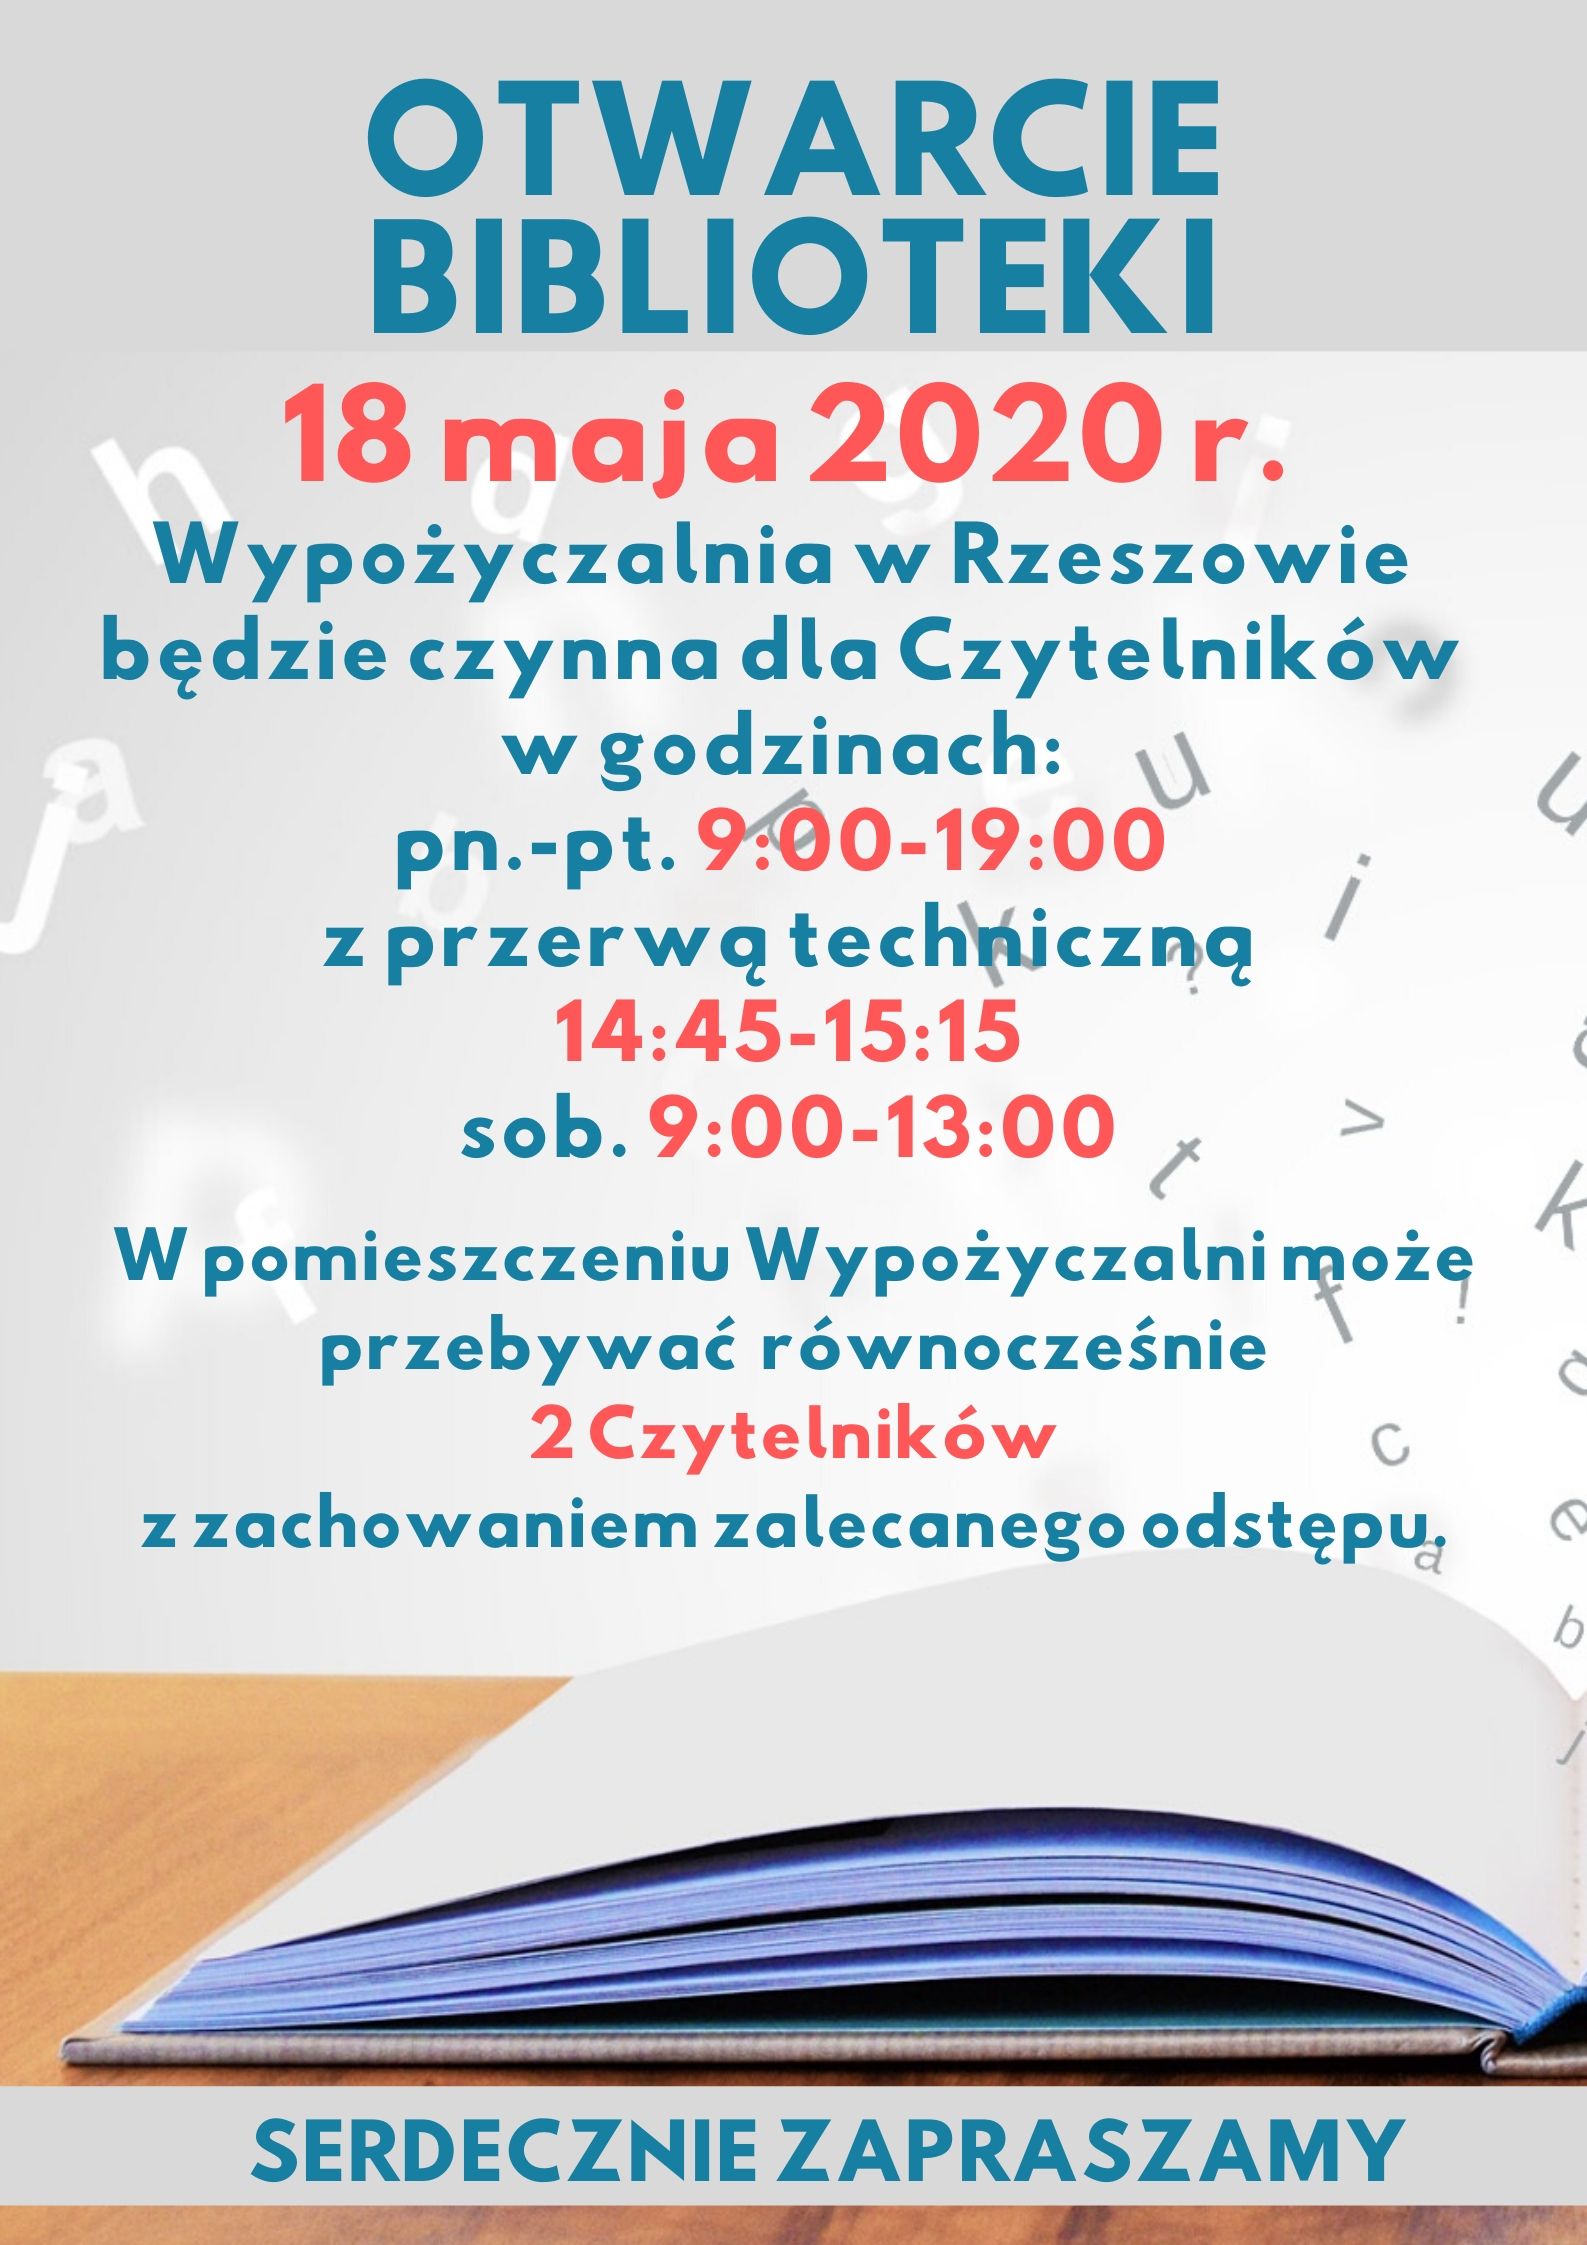 Plakat informujący o otwarciu biblioteki